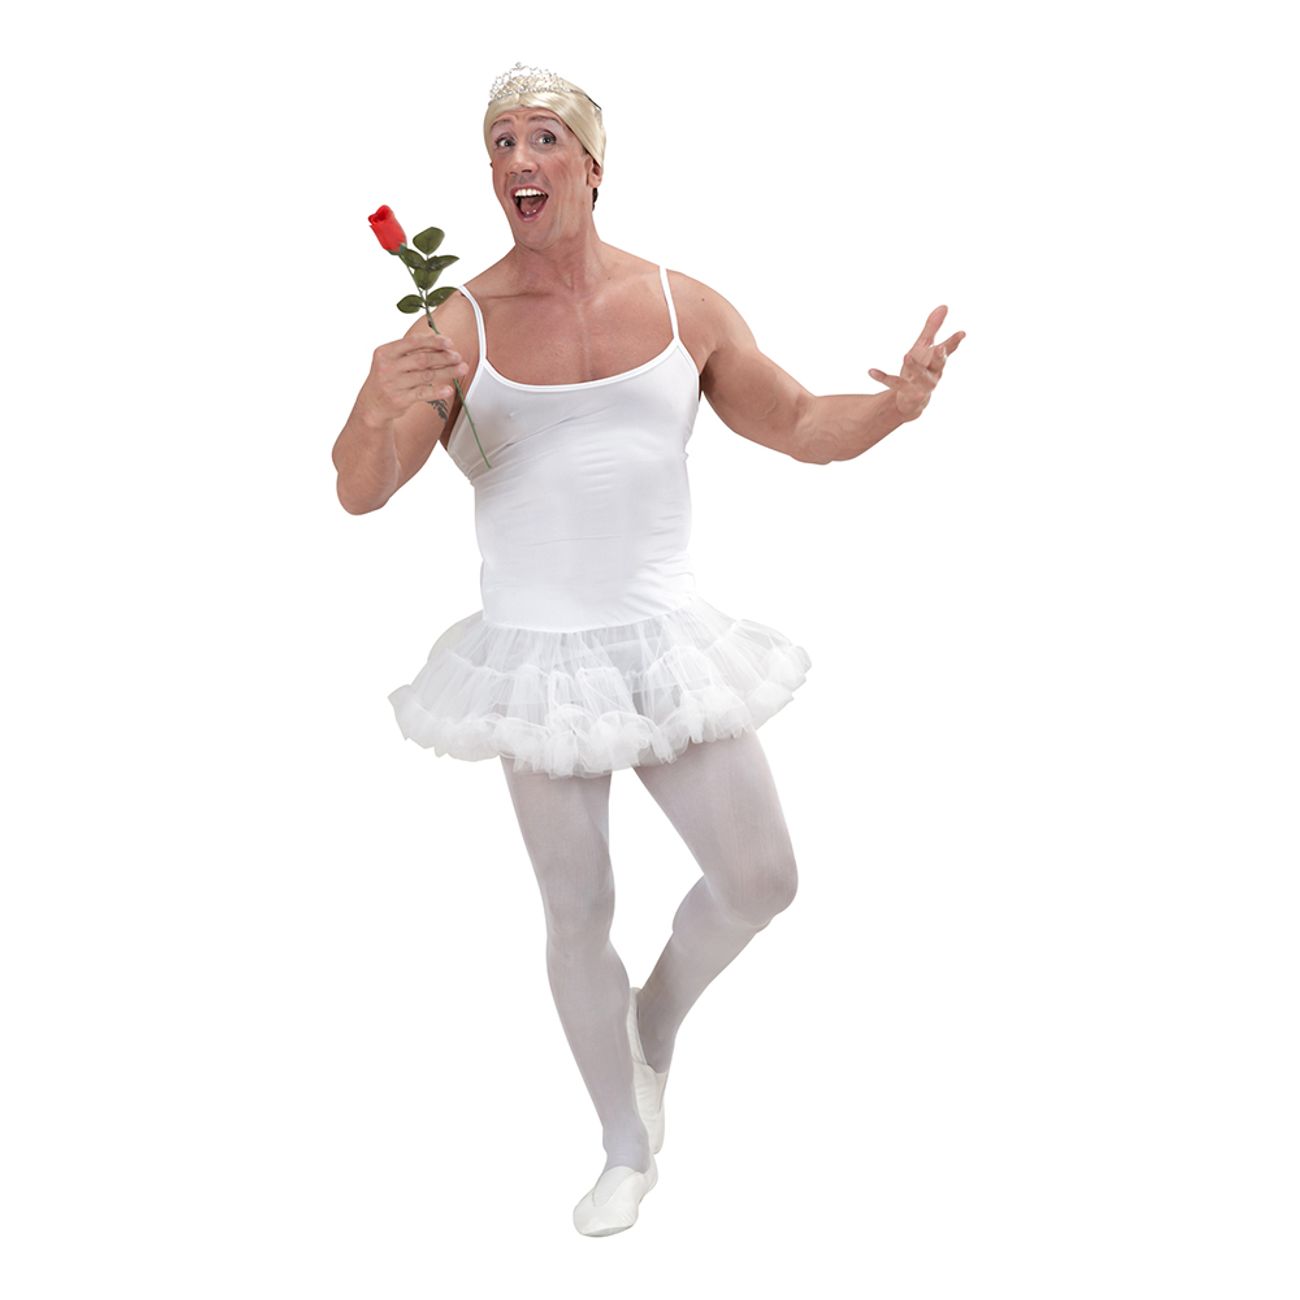 manlig-ballerina-vit-maskeraddrakt-1